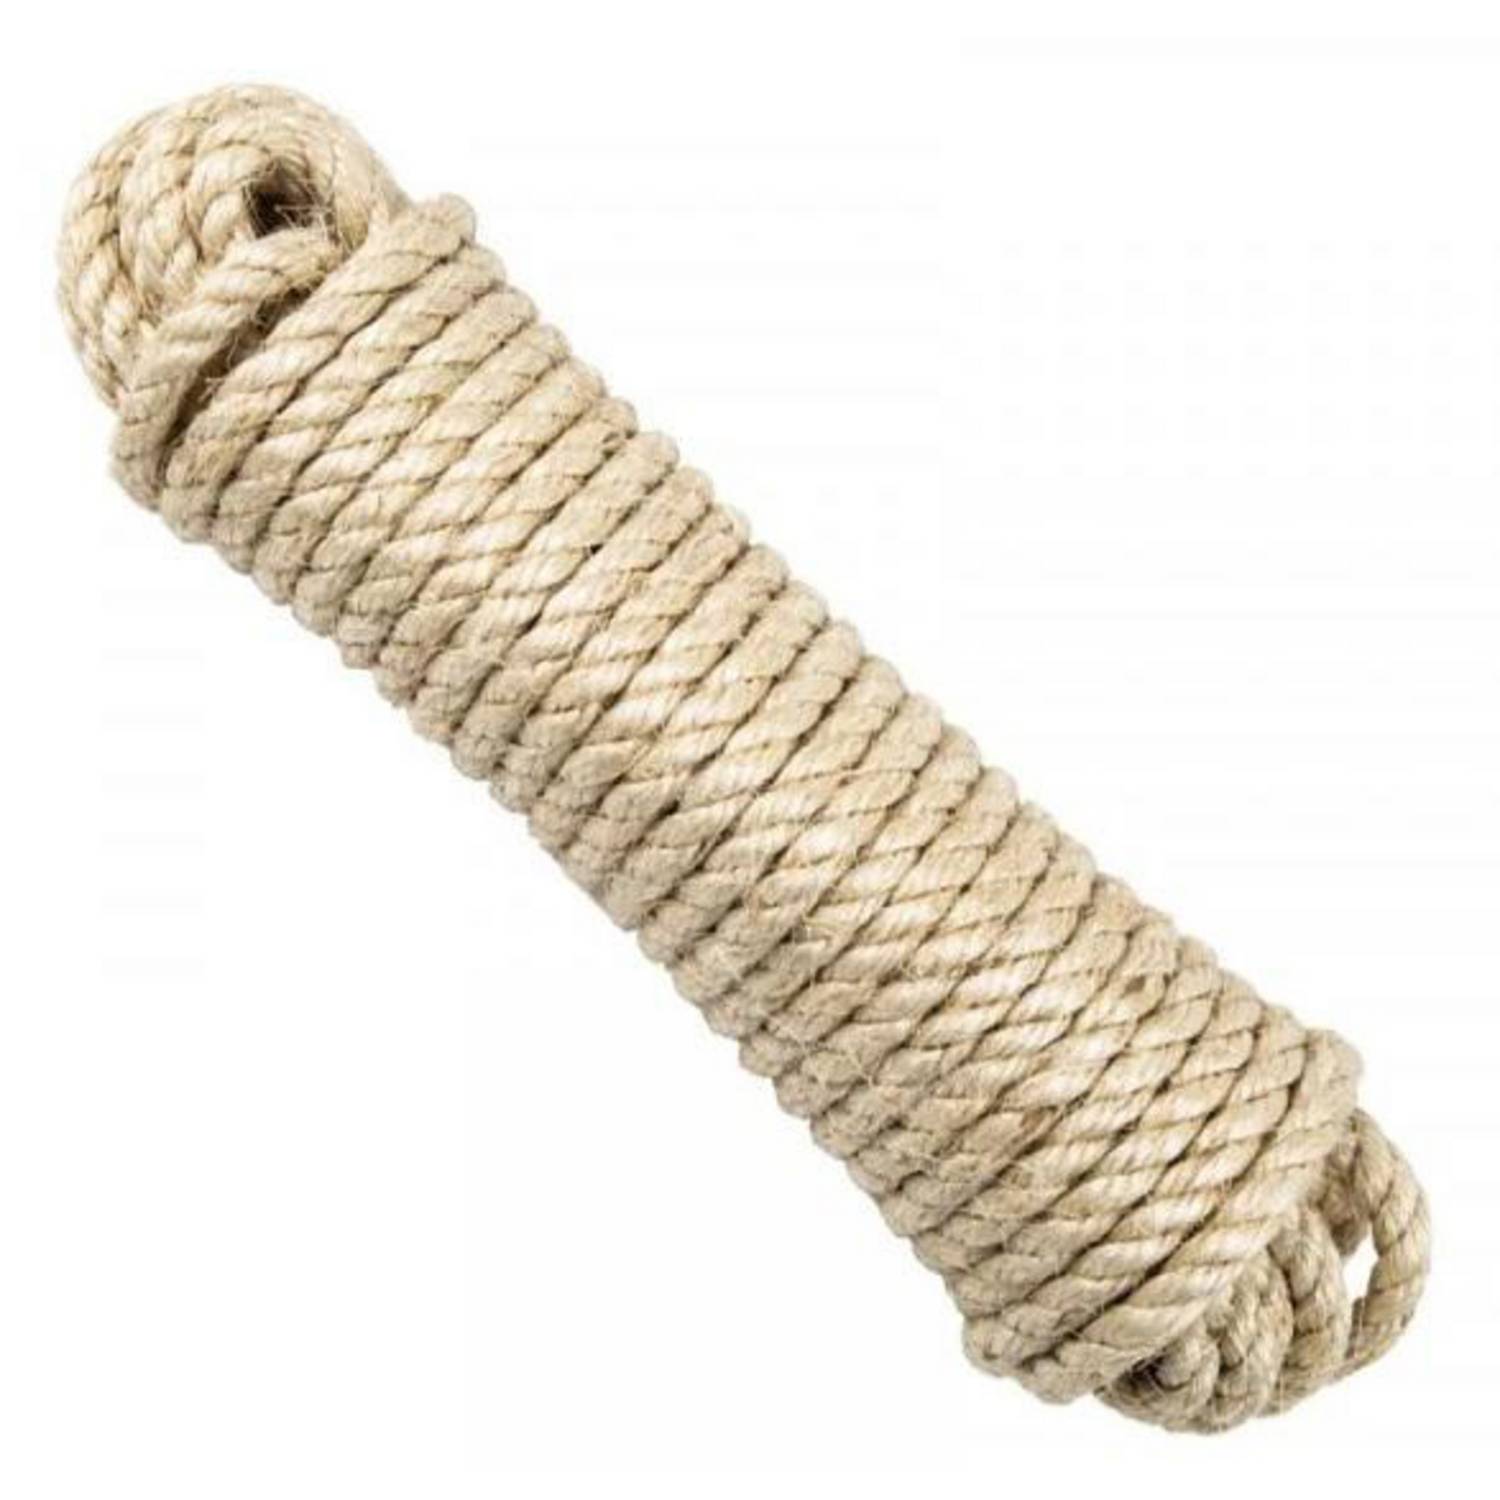 Qué es una cuerda de sisal?